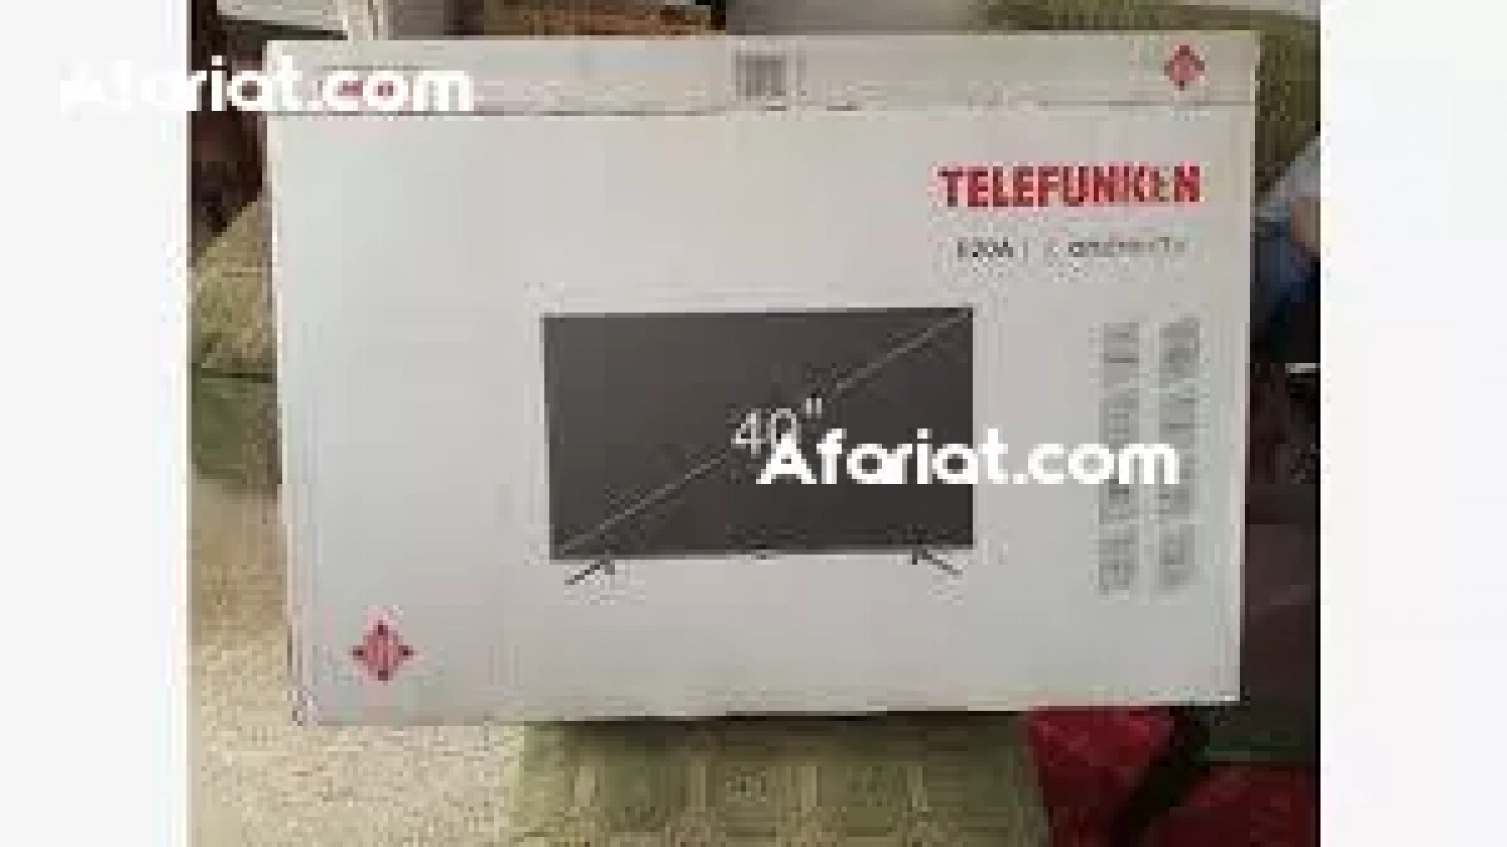 telefunken tv smart 40